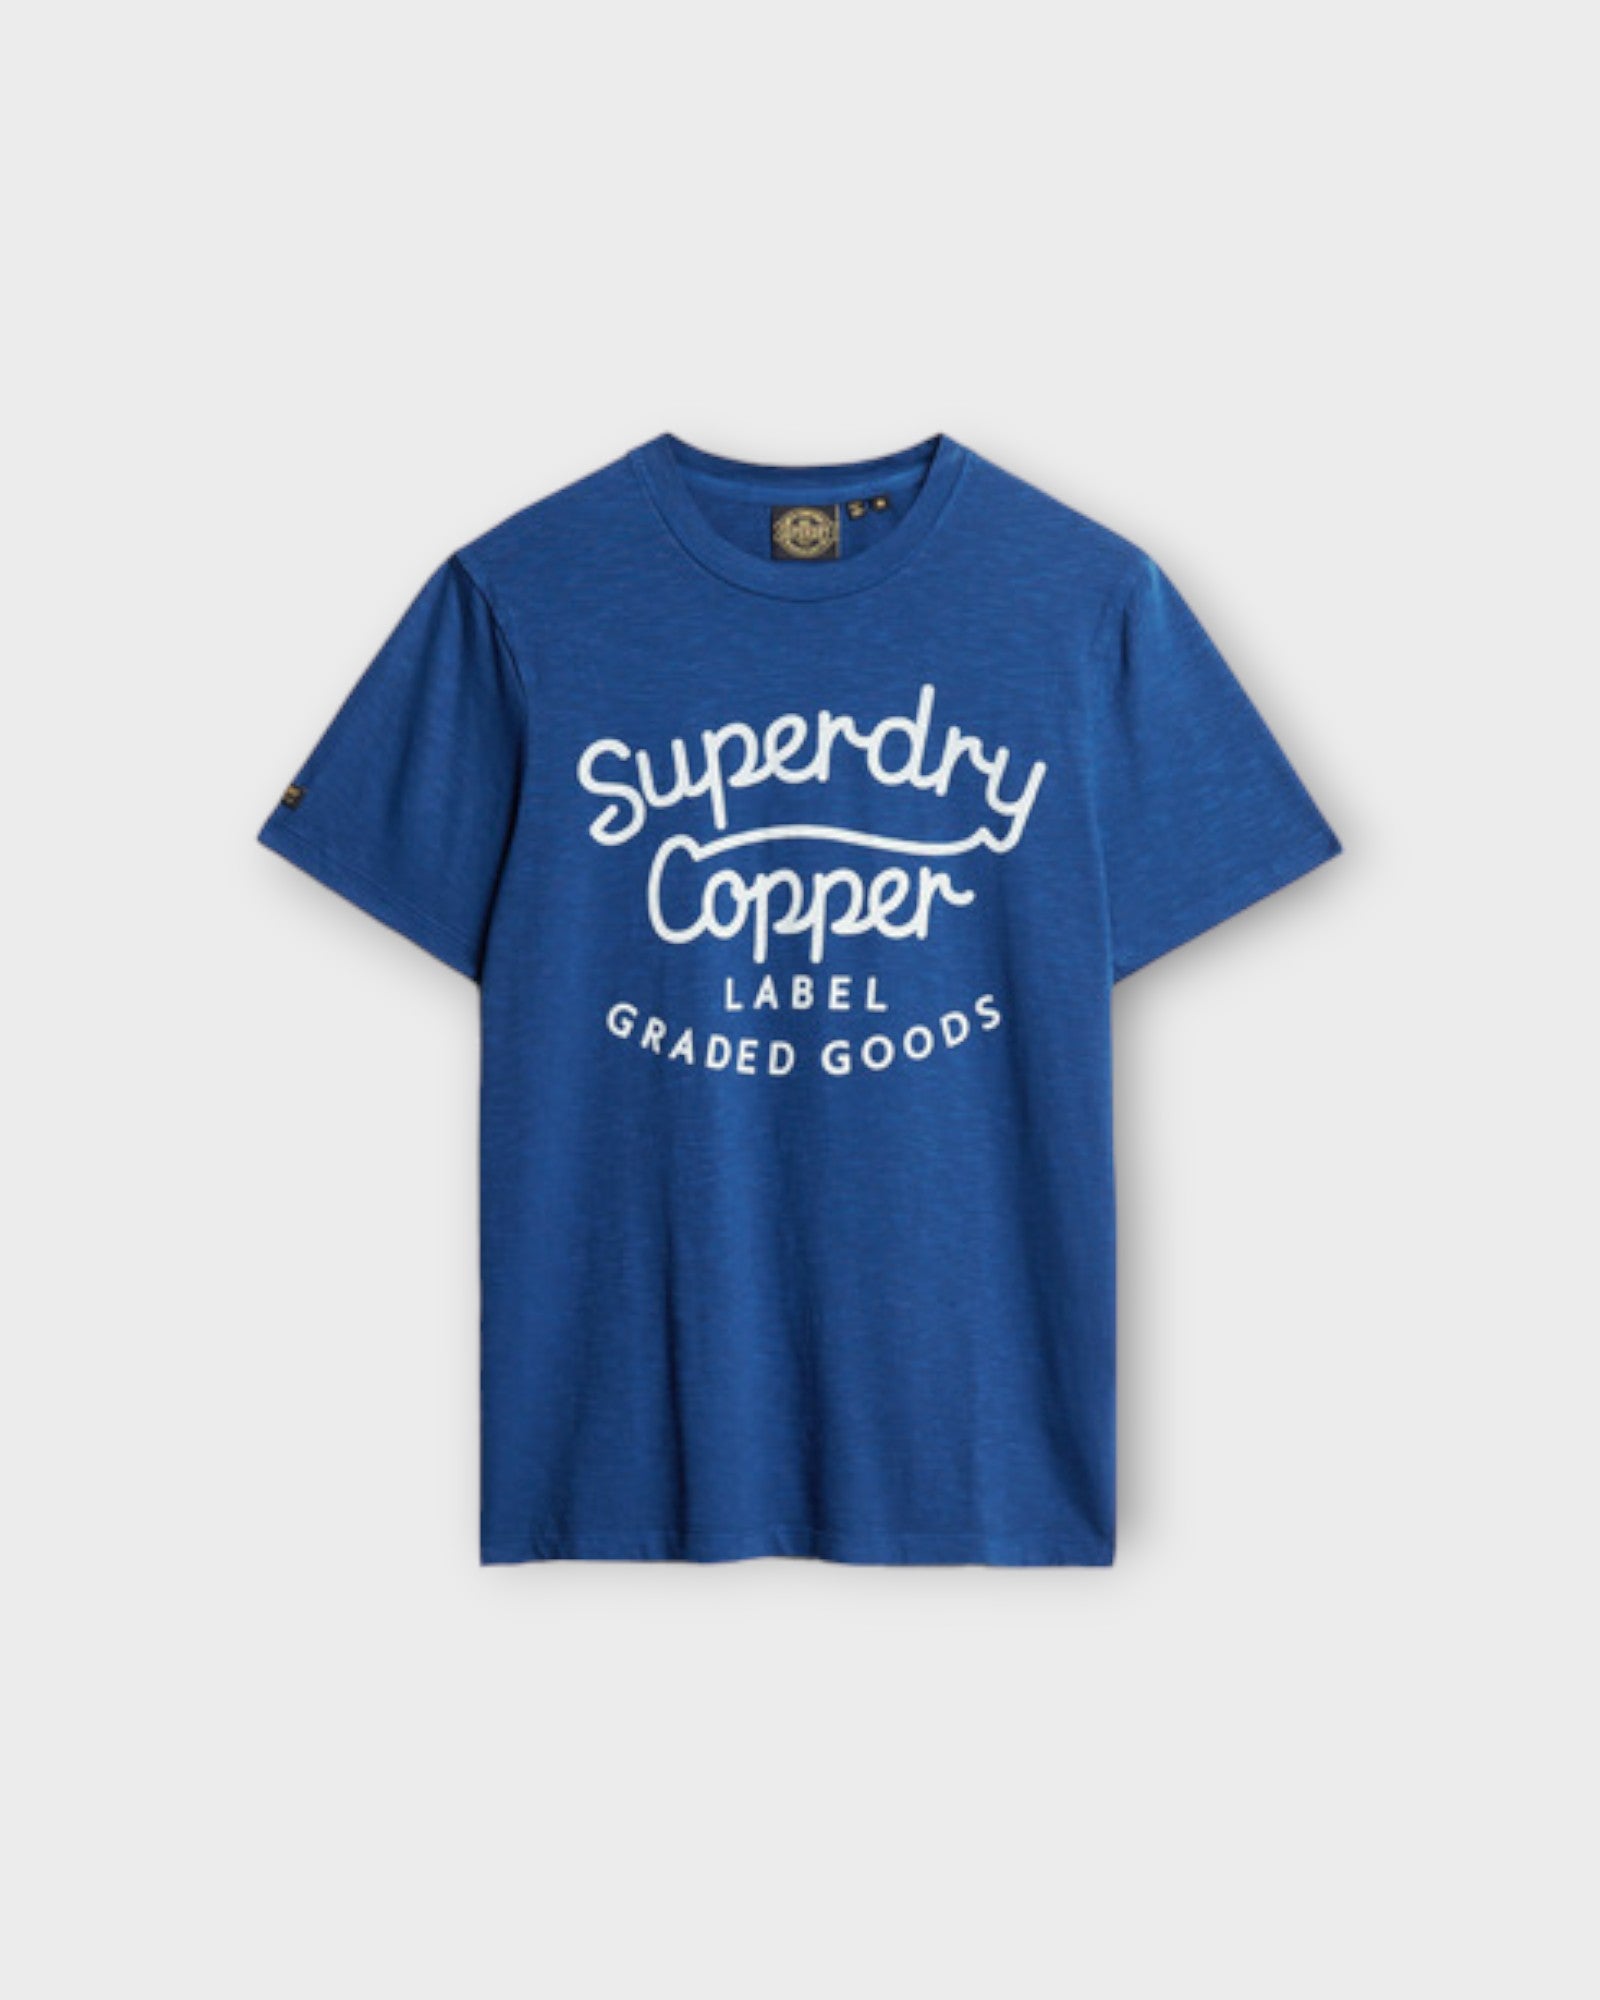 Copper Label Script Tee Pilot Mid Blue Slub. Blå printet Superdry Herre T-shirt. Her set forfra.